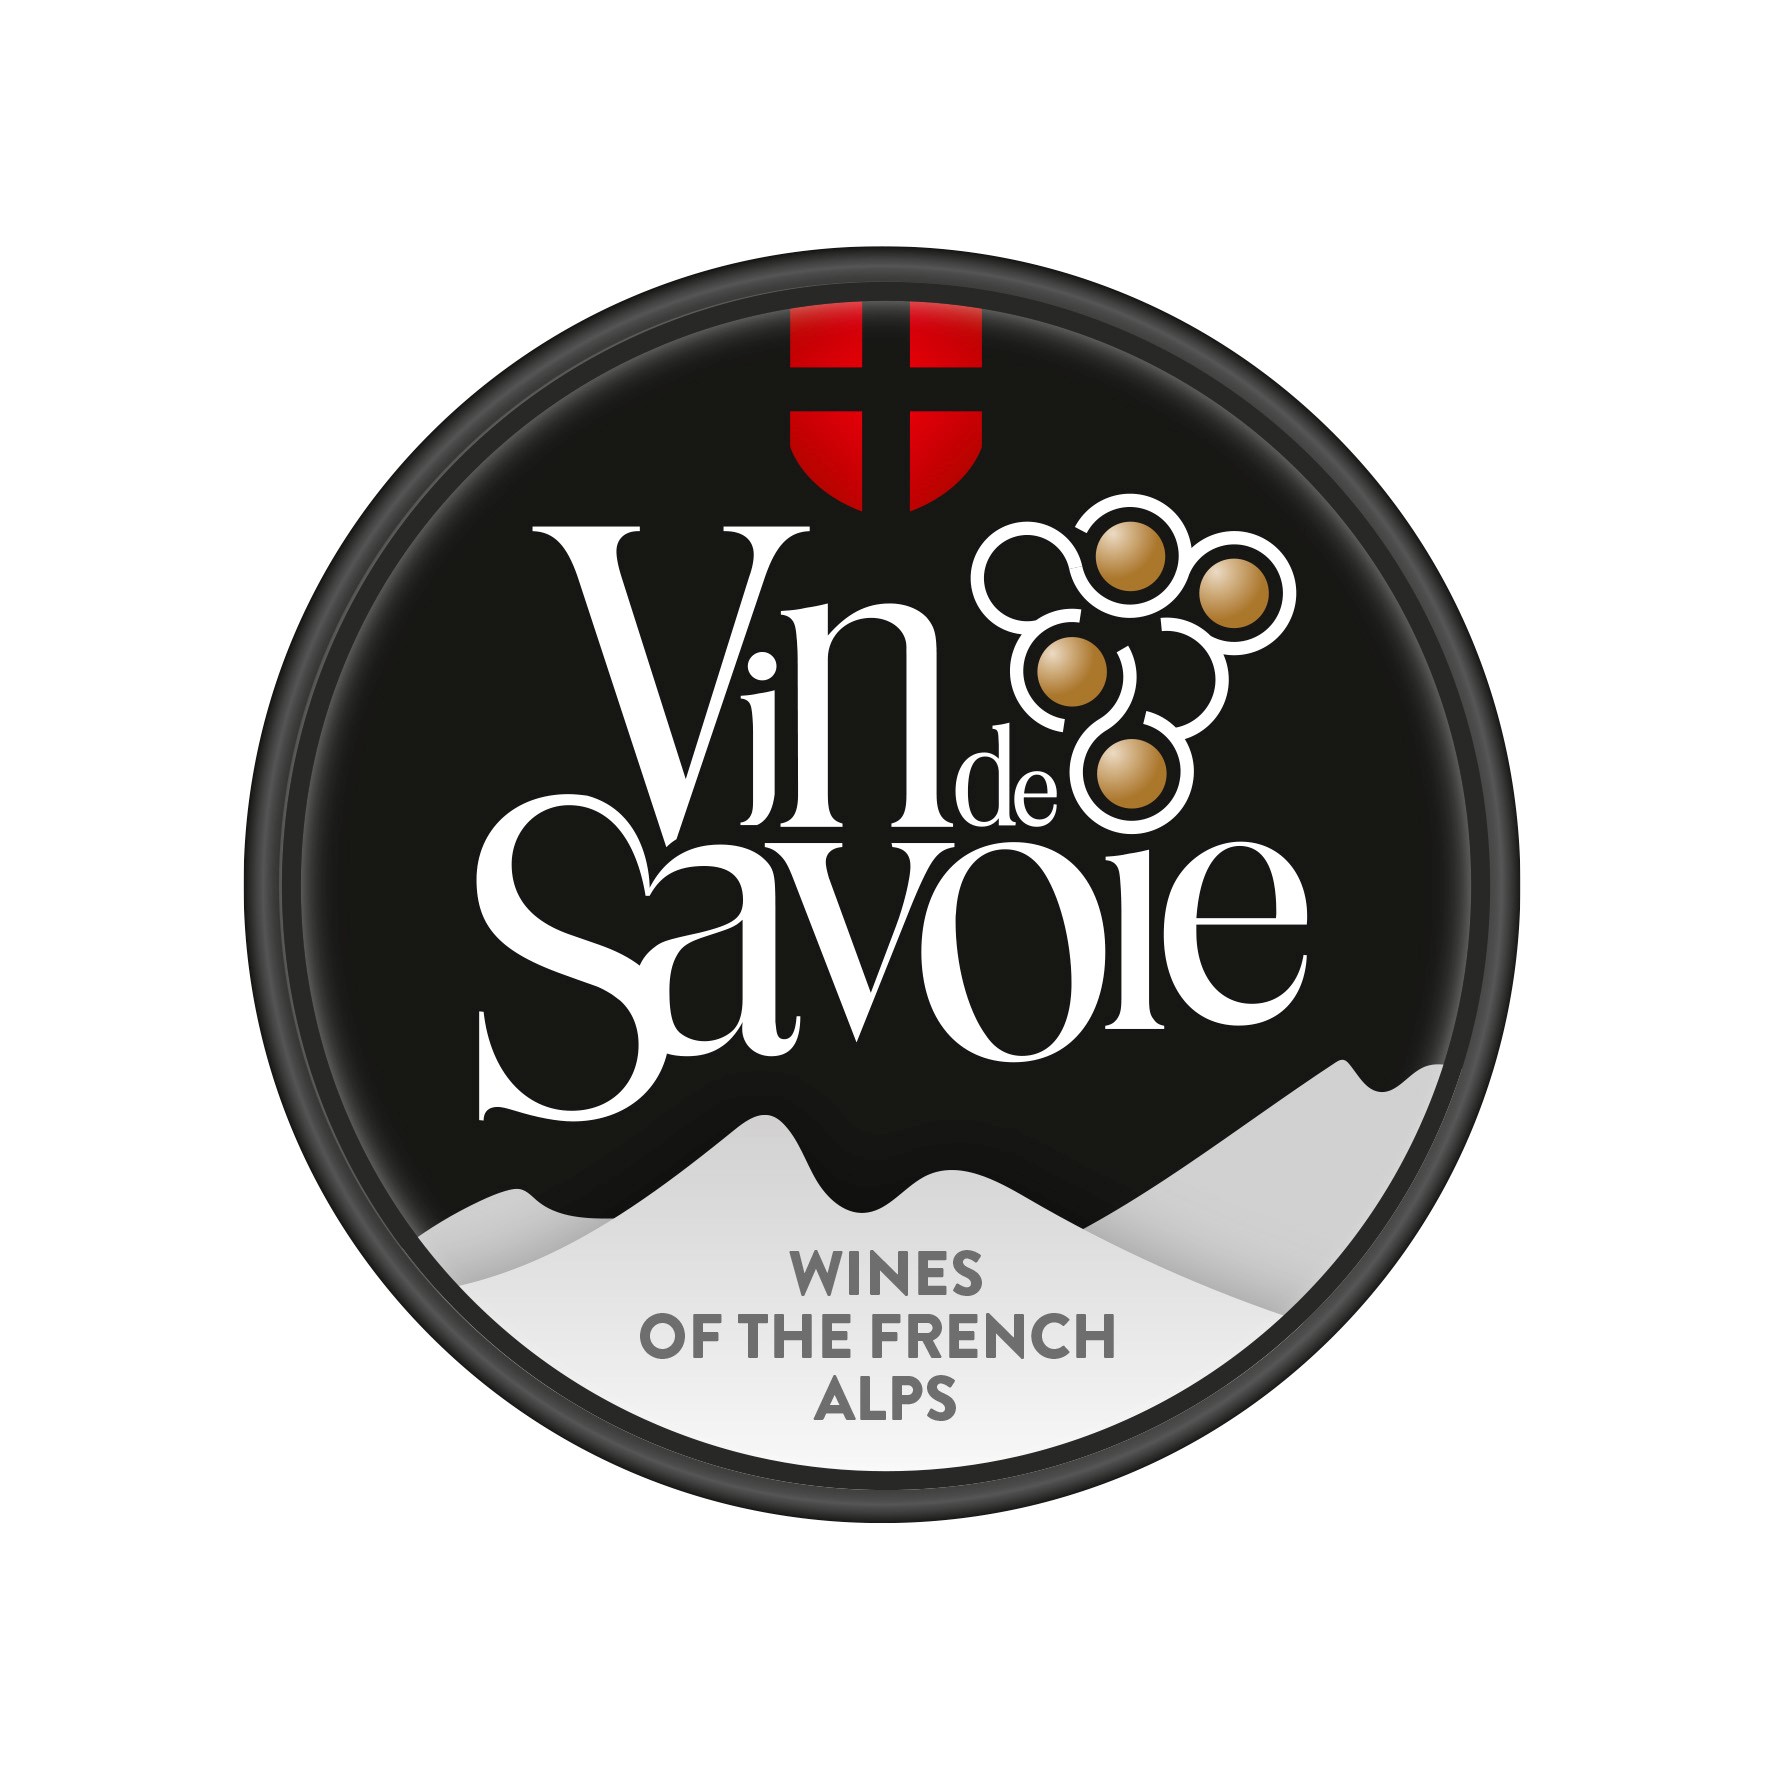 Vins de Savoie